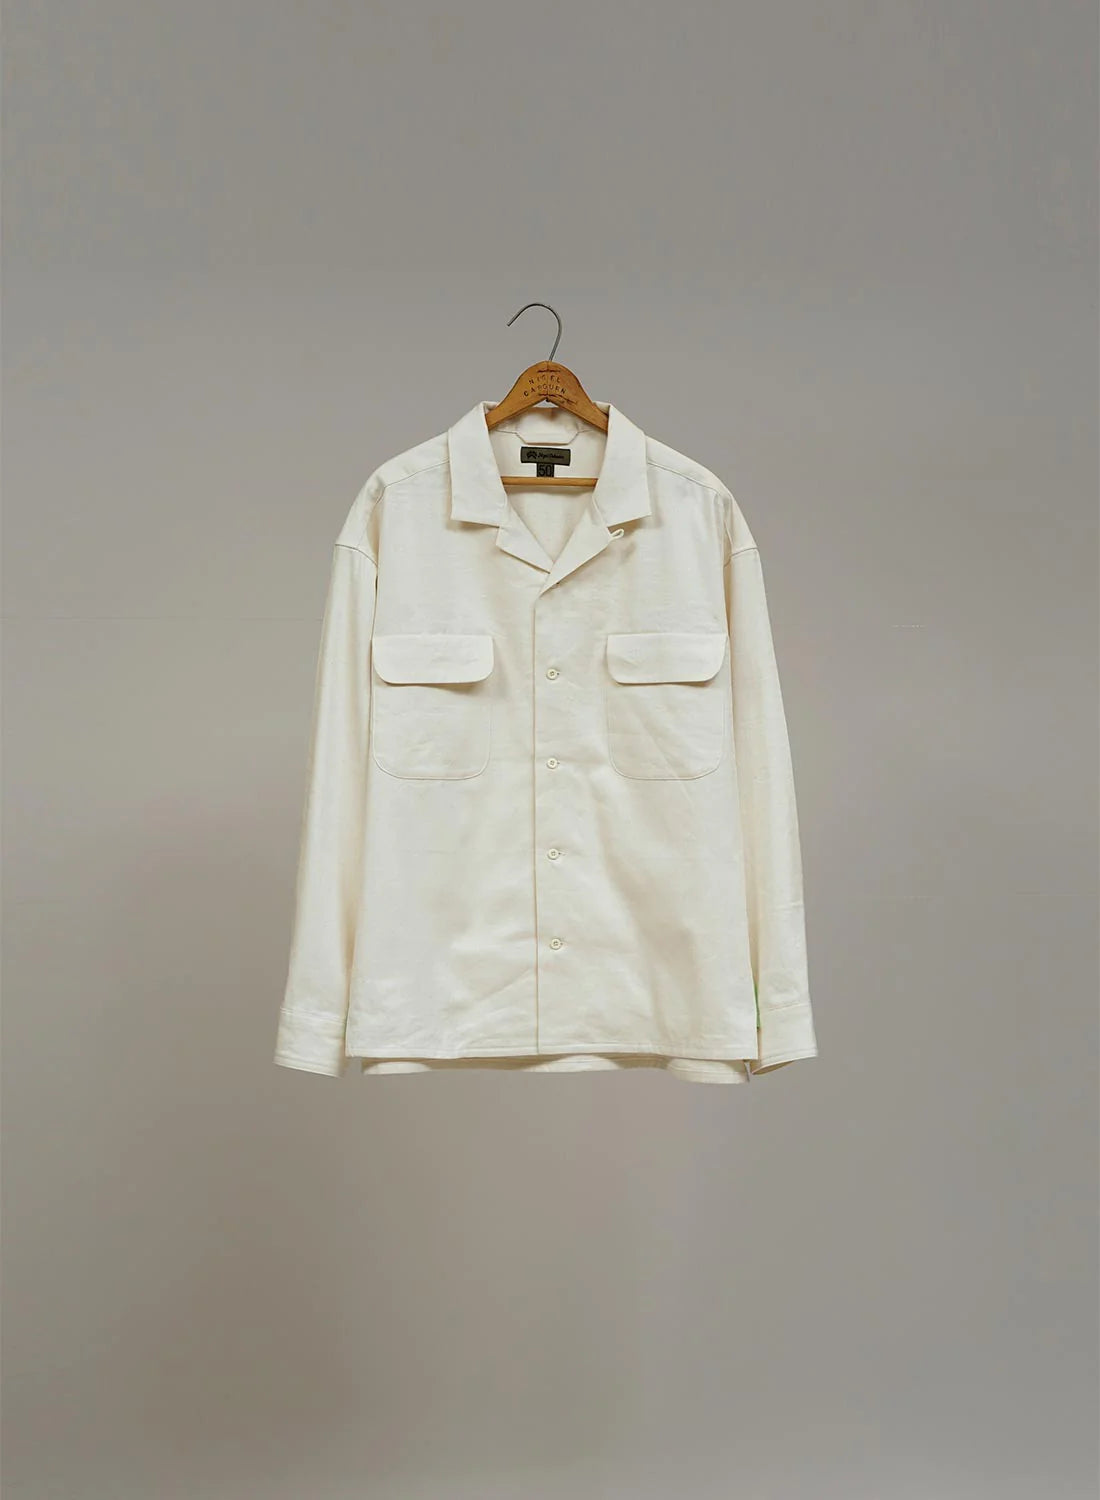 Nigel Cabourn Open Collar Shirt Linen Fleece